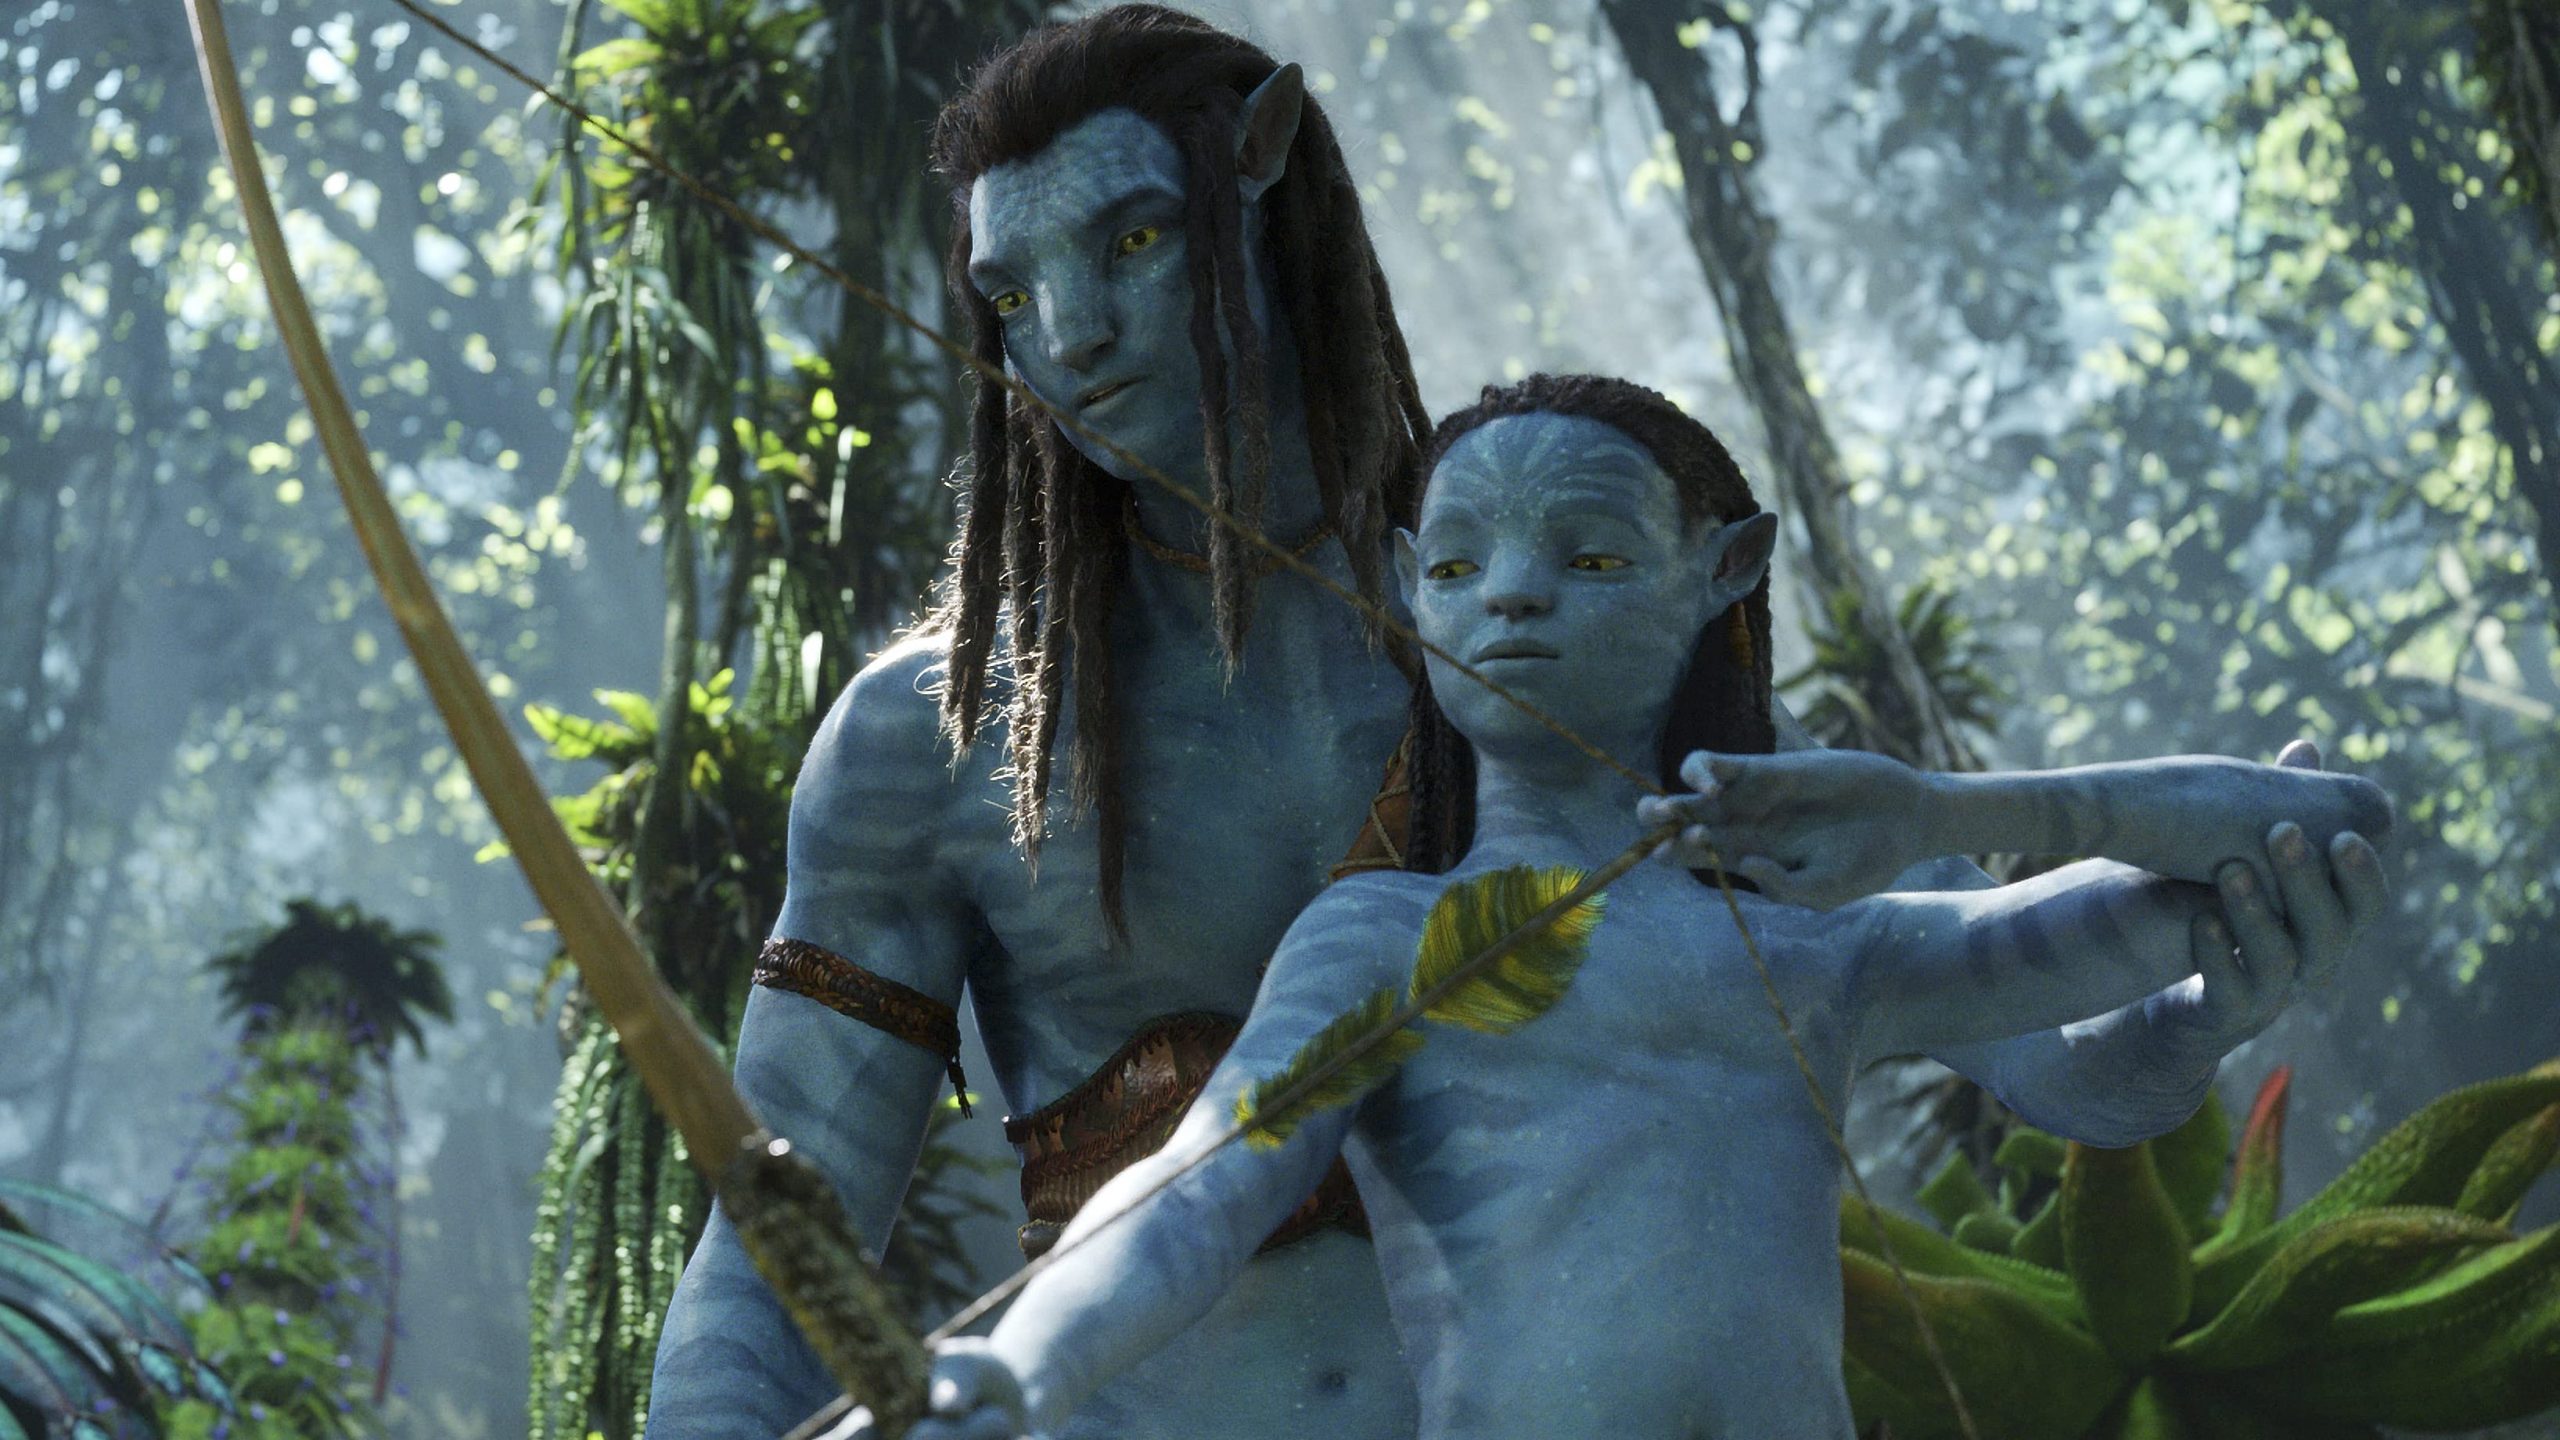 Avatar 2 siêu phẩm: Avatar 2 được mong đợi là siêu phẩm của năm 2024, với trang bị đồ họa hiện đại và câu chuyện tiếp nối mang tính thâm nhập. Bộ phim hứa hẹn sẽ đem lại cho bạn những trải nghiệm thị giác tuyệt đẹp cùng các tình tiết hấp dẫn không lường trước được. Đừng bỏ lỡ hình ảnh liên quan đến Avatar 2, để cùng đắm chìm trong một thế giới kỳ diệu và đầy mê hoặc.